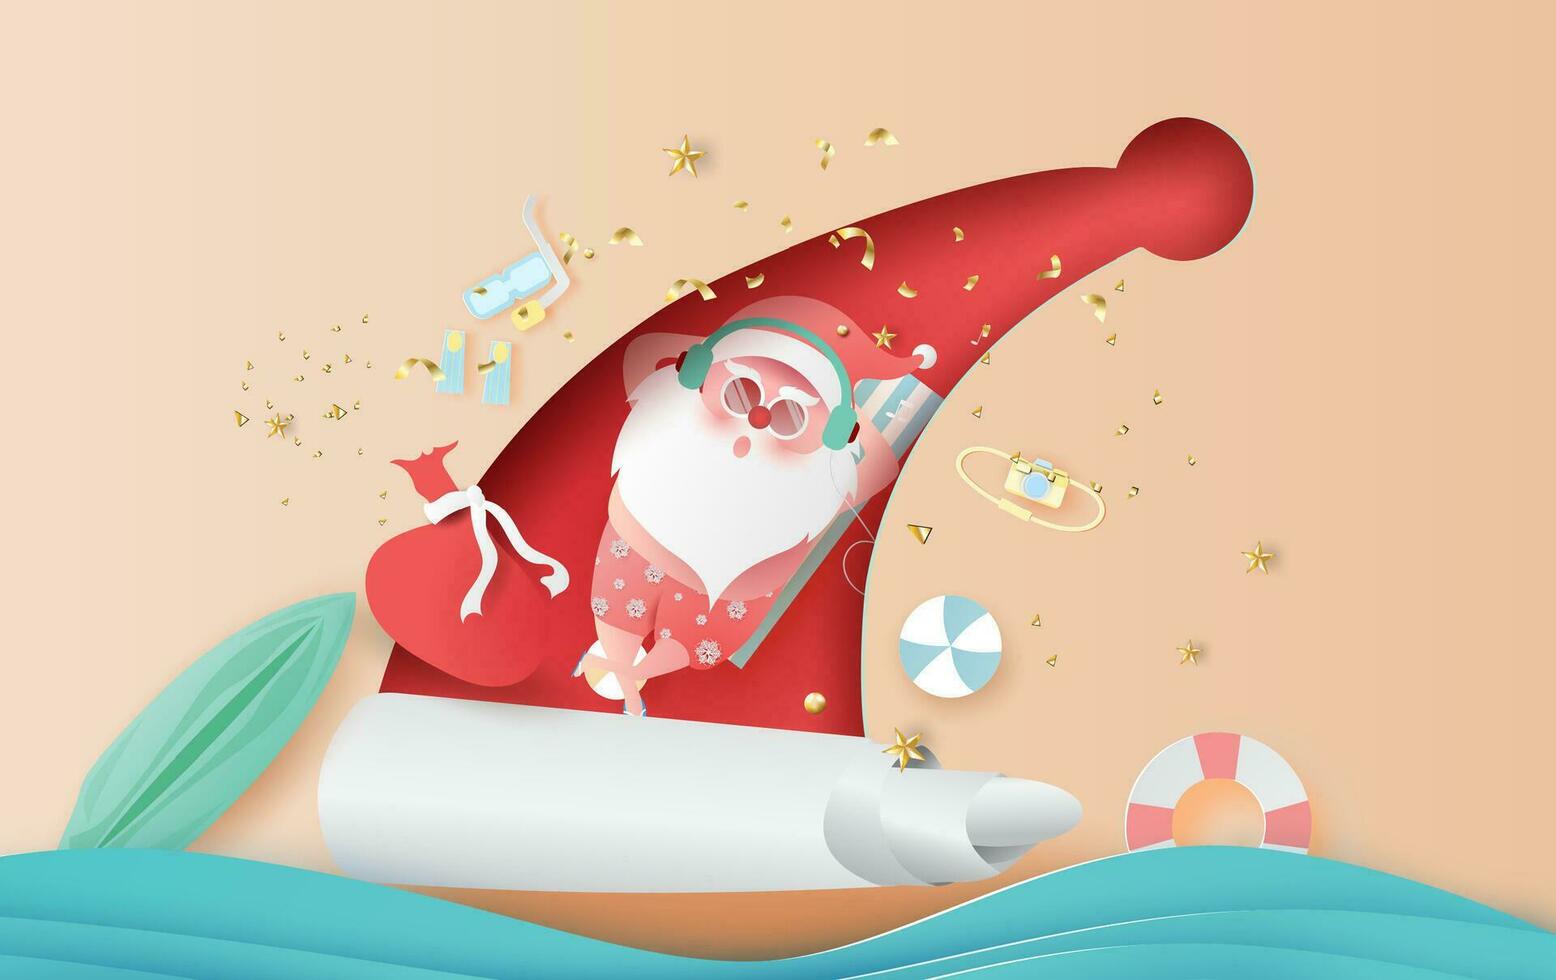 Sommer- Santa claus Weihnachten Tag Juli.Lieferung Bedienung Konzept süß Karikatur Charakter zum Weihnachten Design auf Meer Welle Wasser hintergrund.kreativ Papier Schnitt und Kunst style.web minimal Vektor Illustration